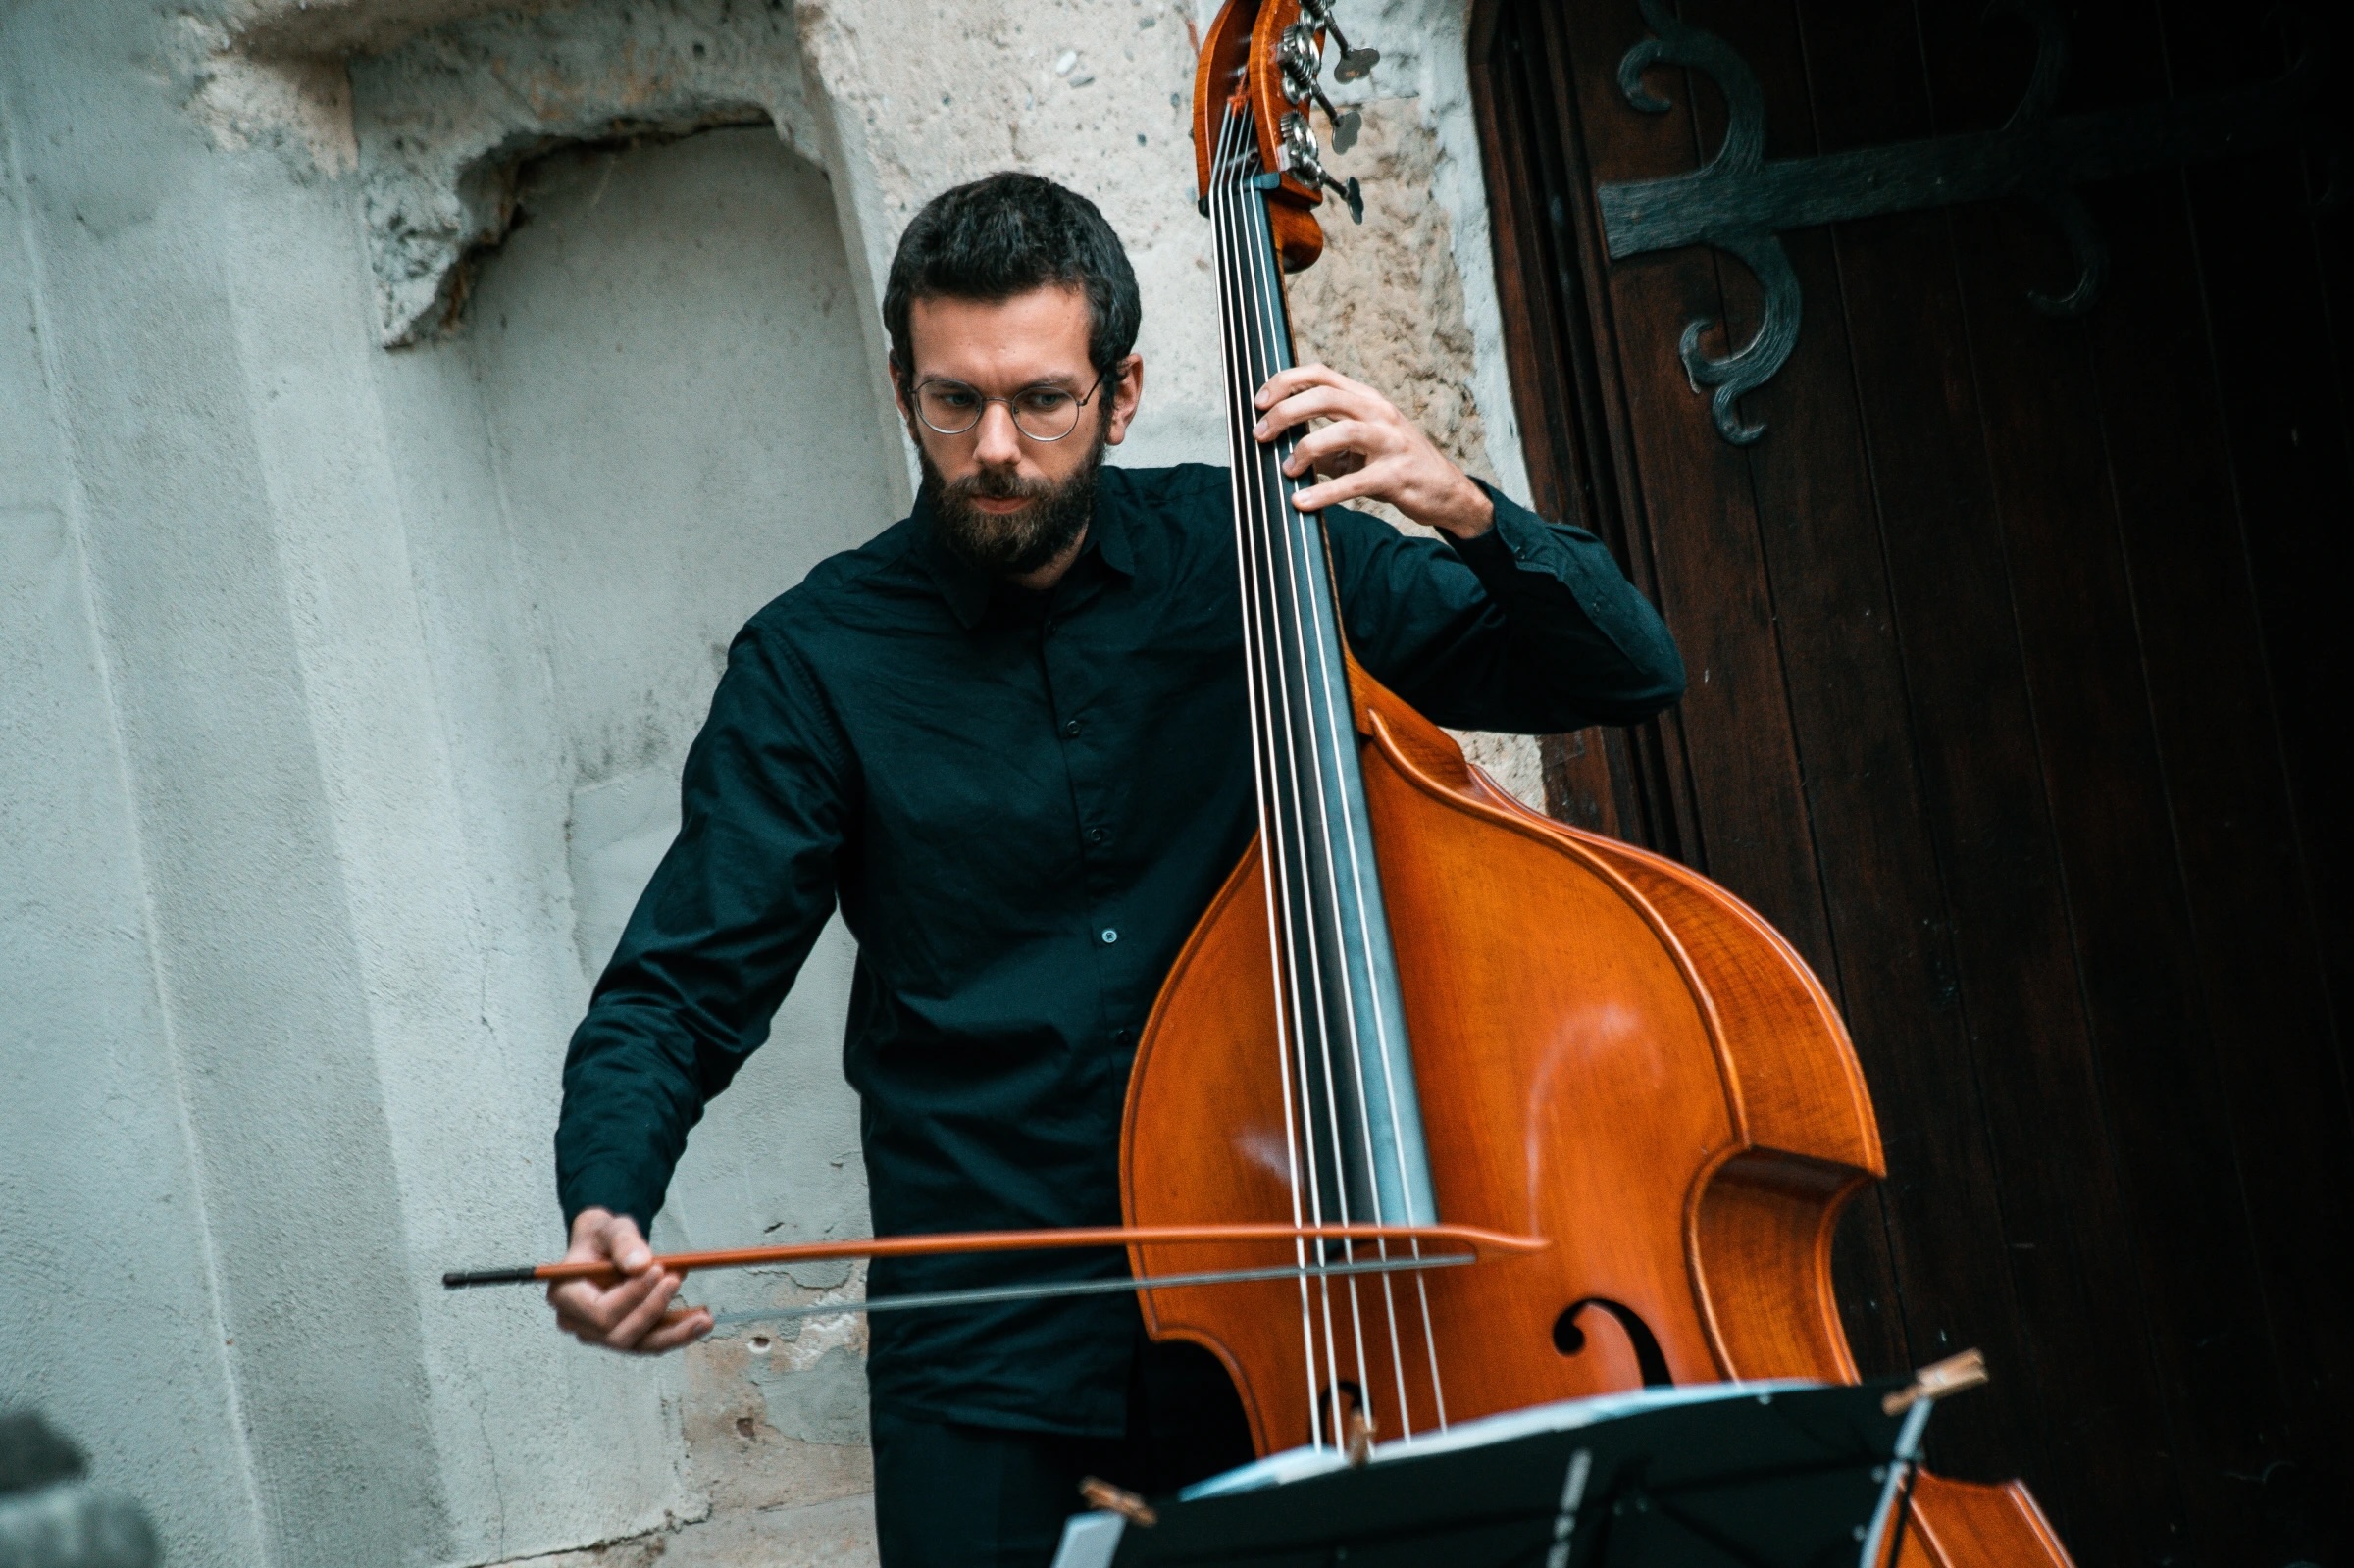 Im Hintergrund des einen Gebäudes spielt ein Mann Cello (Thomas Kolarczyk). Er trägt dunkle Kleidung.